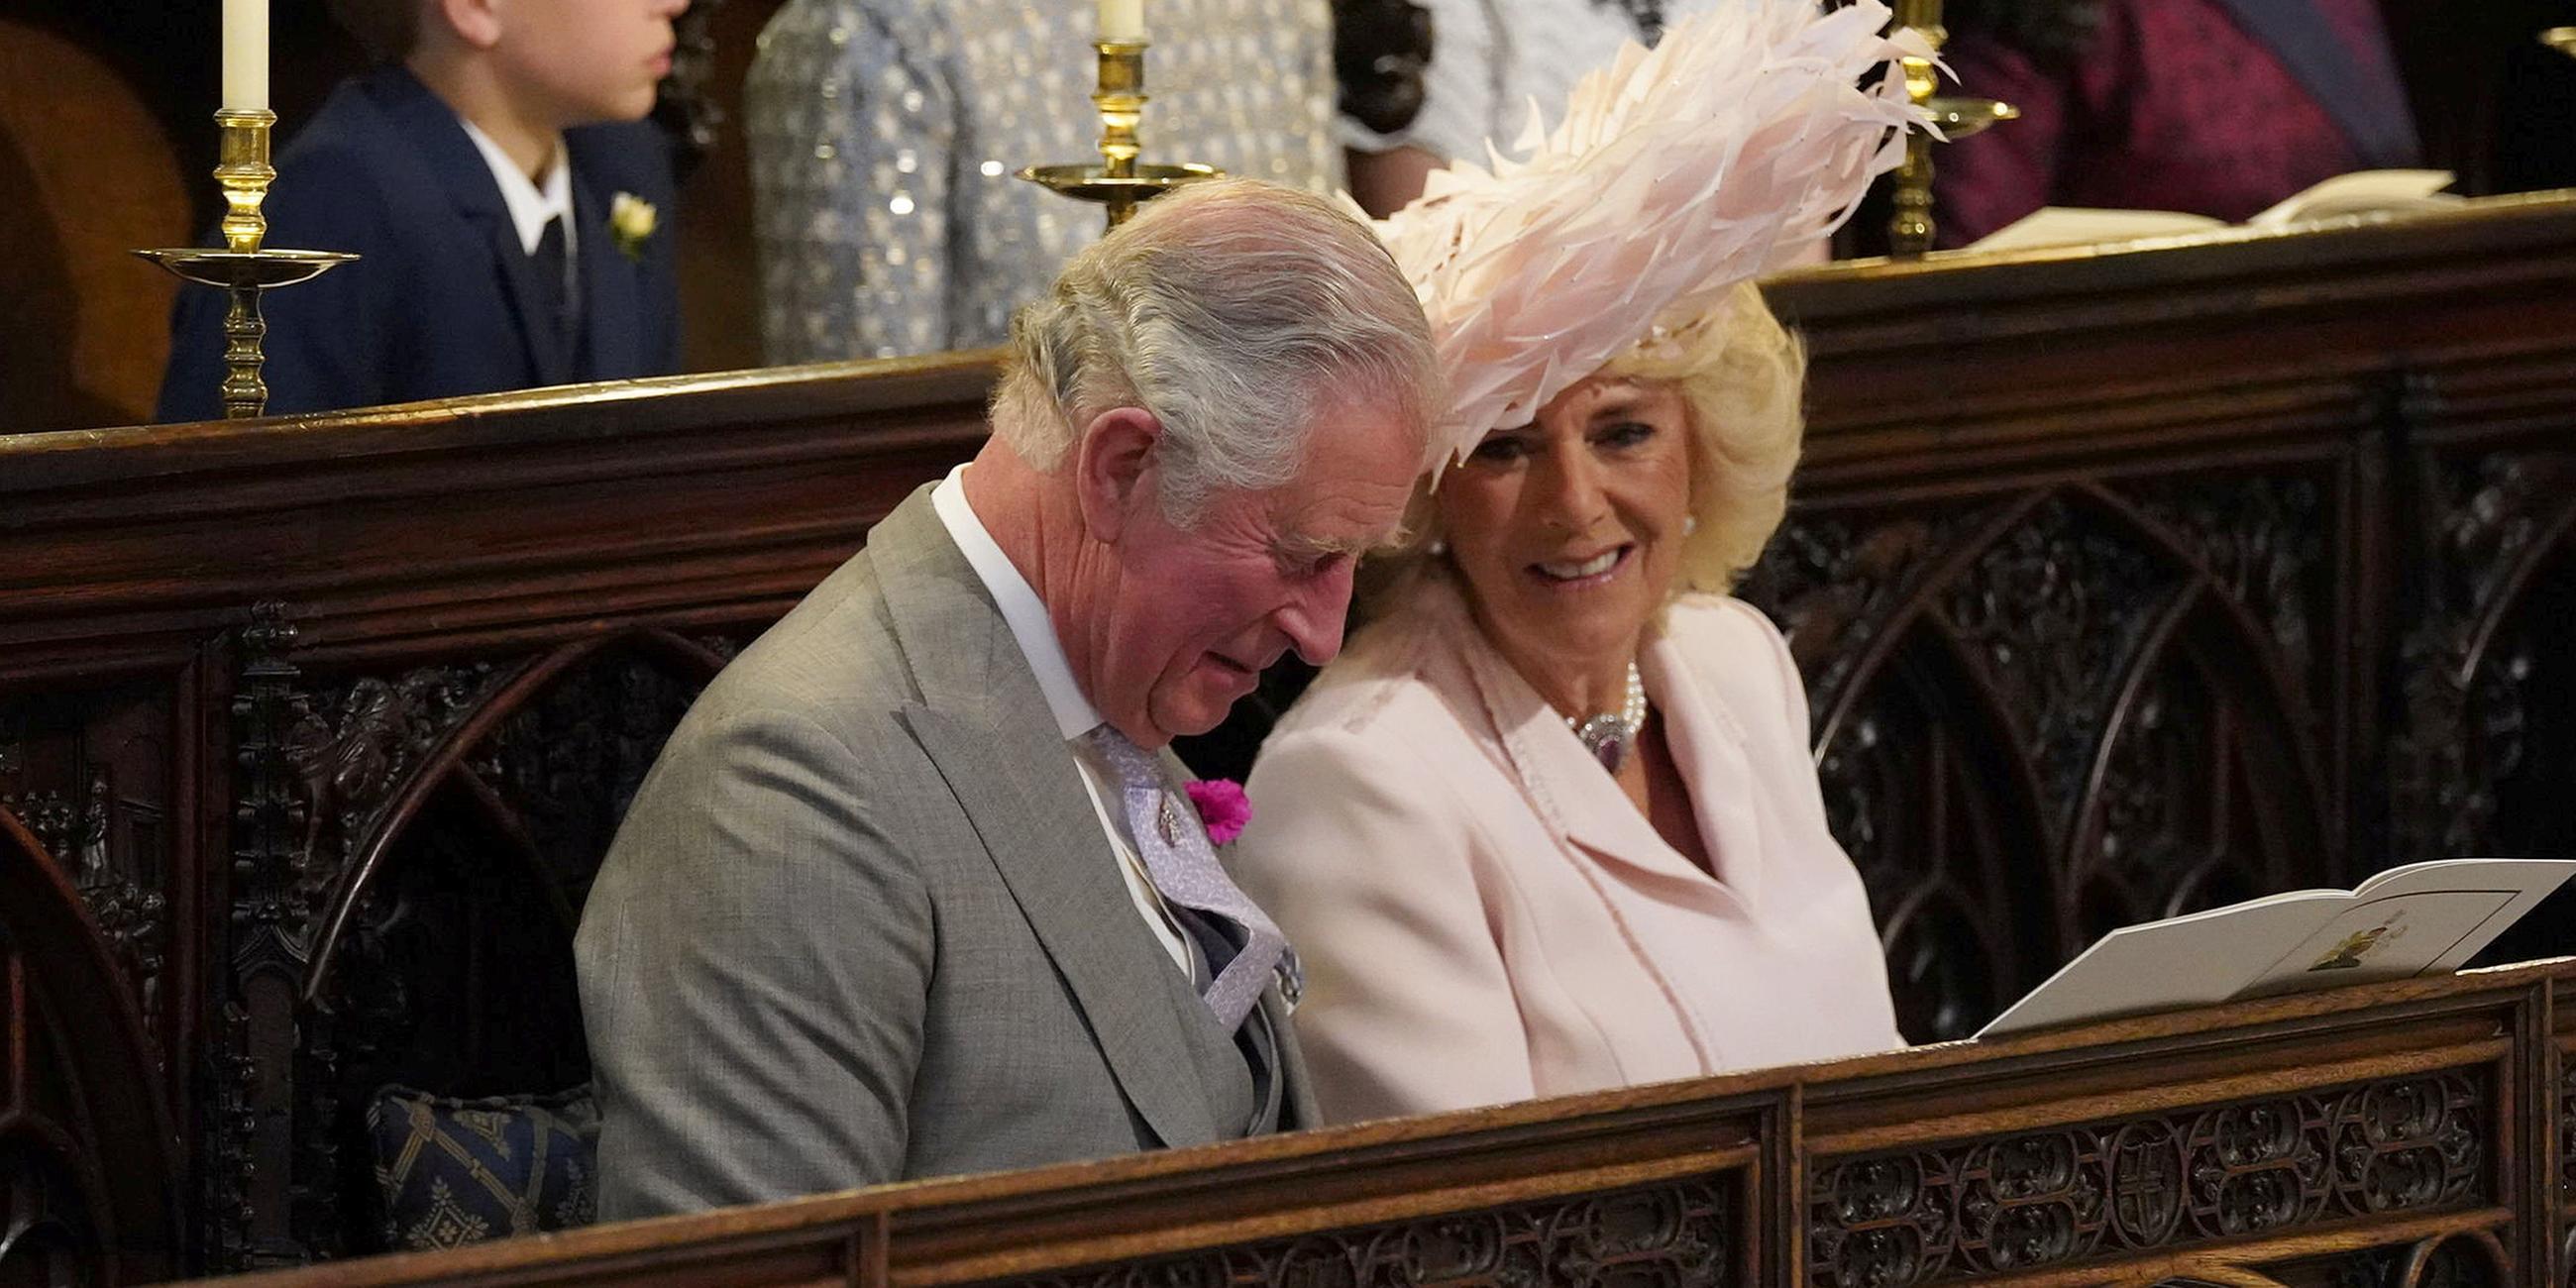 Hochzeit in Windsor: Charles und Camilla